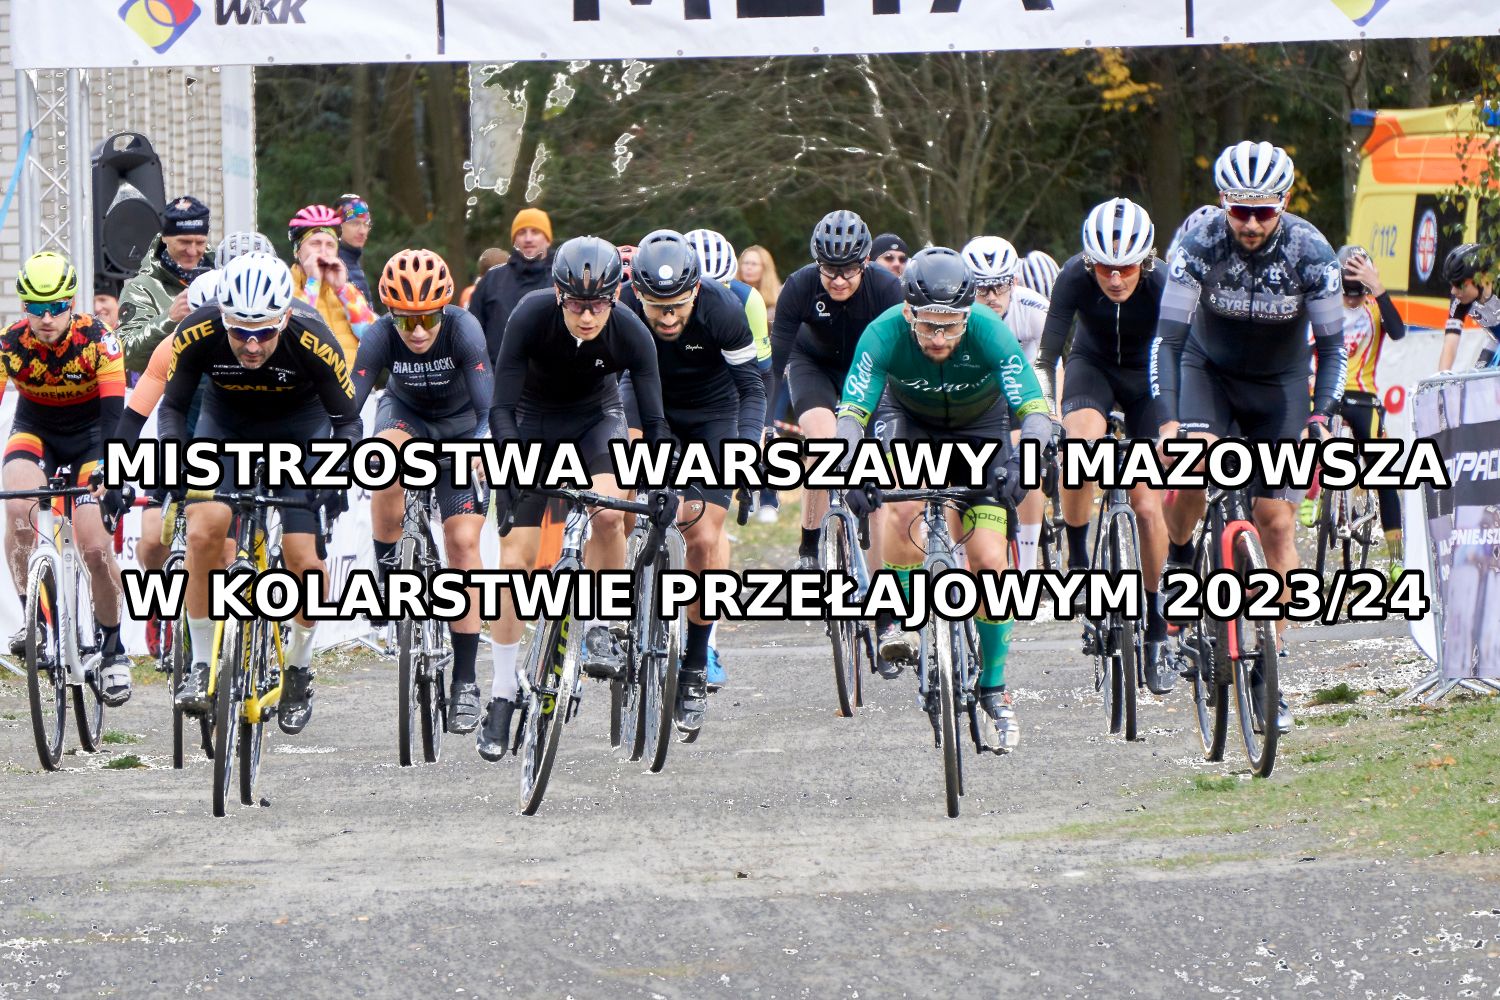 Mistrzostwa Warszawy i Mazowsza w kolarstwie przełajowym, Poligon WAT | RELACJA | KOMENTARZE POSTARTOWE | WYNIKI